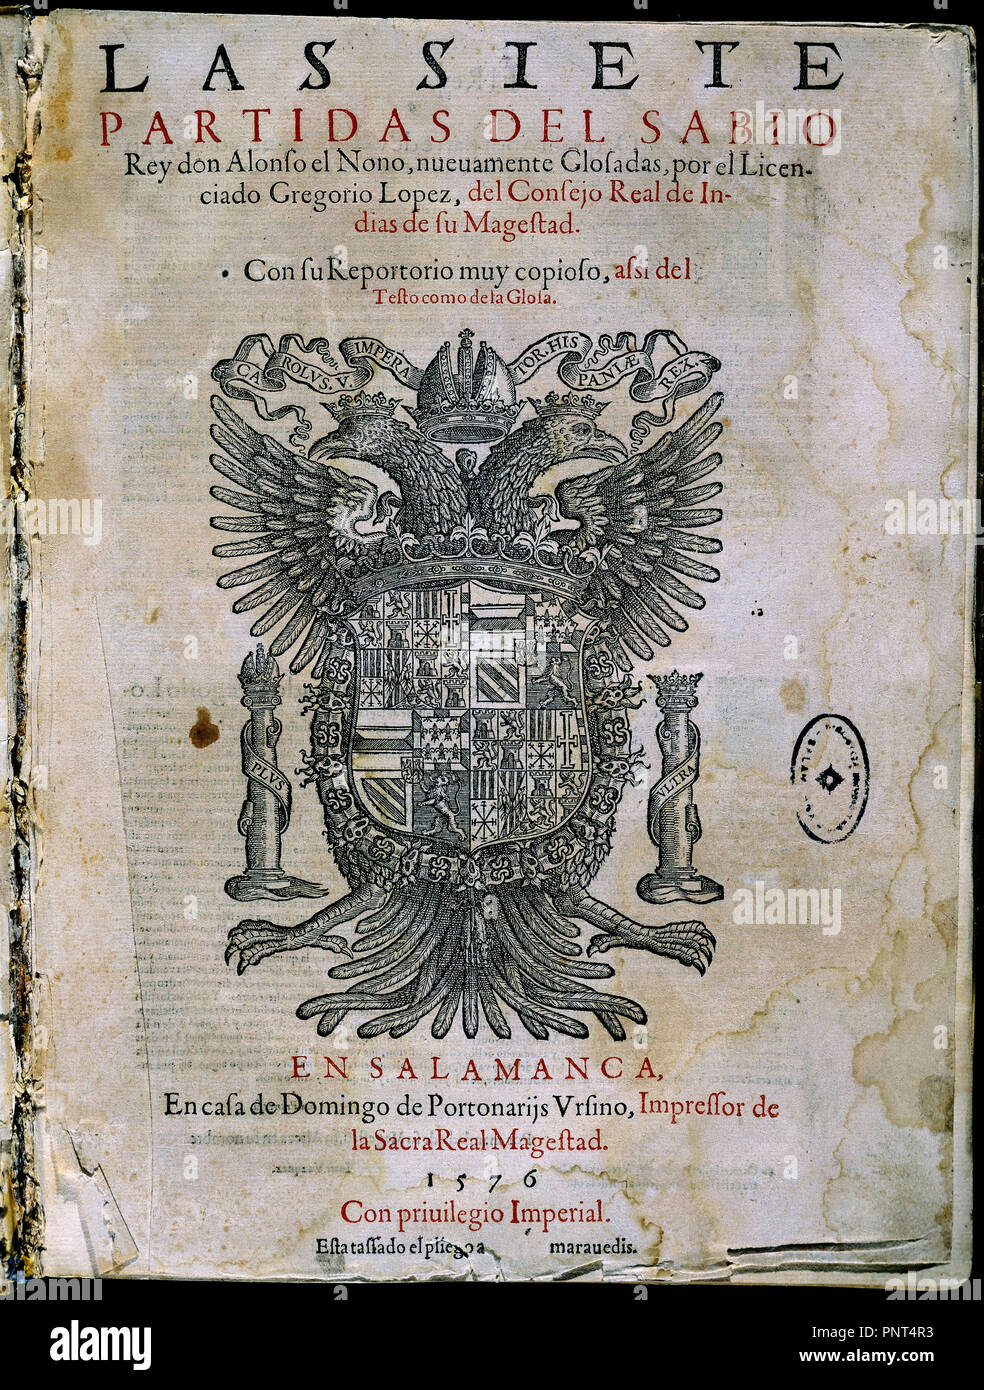 LAS SIETE PARTIDAS-CONTADAS POR GREGORIO LOPEZ-IMPRESAS 1576. Author: Alfonso X of Castile. Location: UNIVERSIDAD BIBLIOTECA. SALAMANCA. Stock Photo